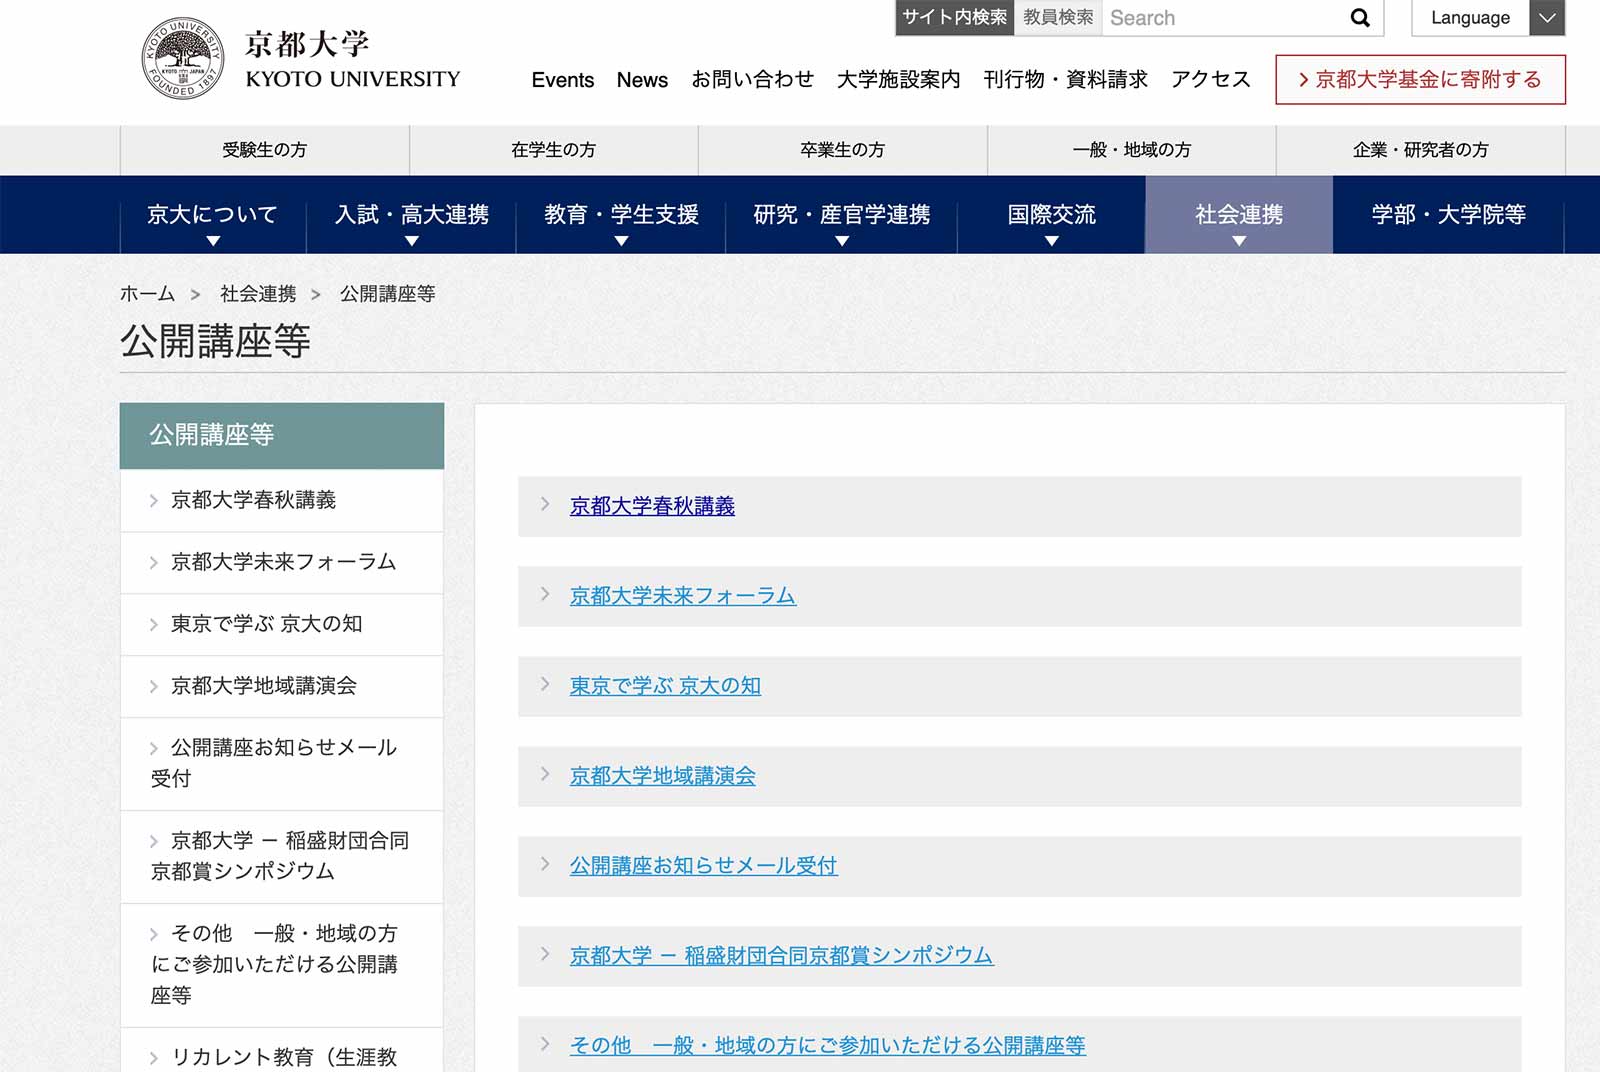 京都大學官網上開放許多講座與研究資料供民眾參考。